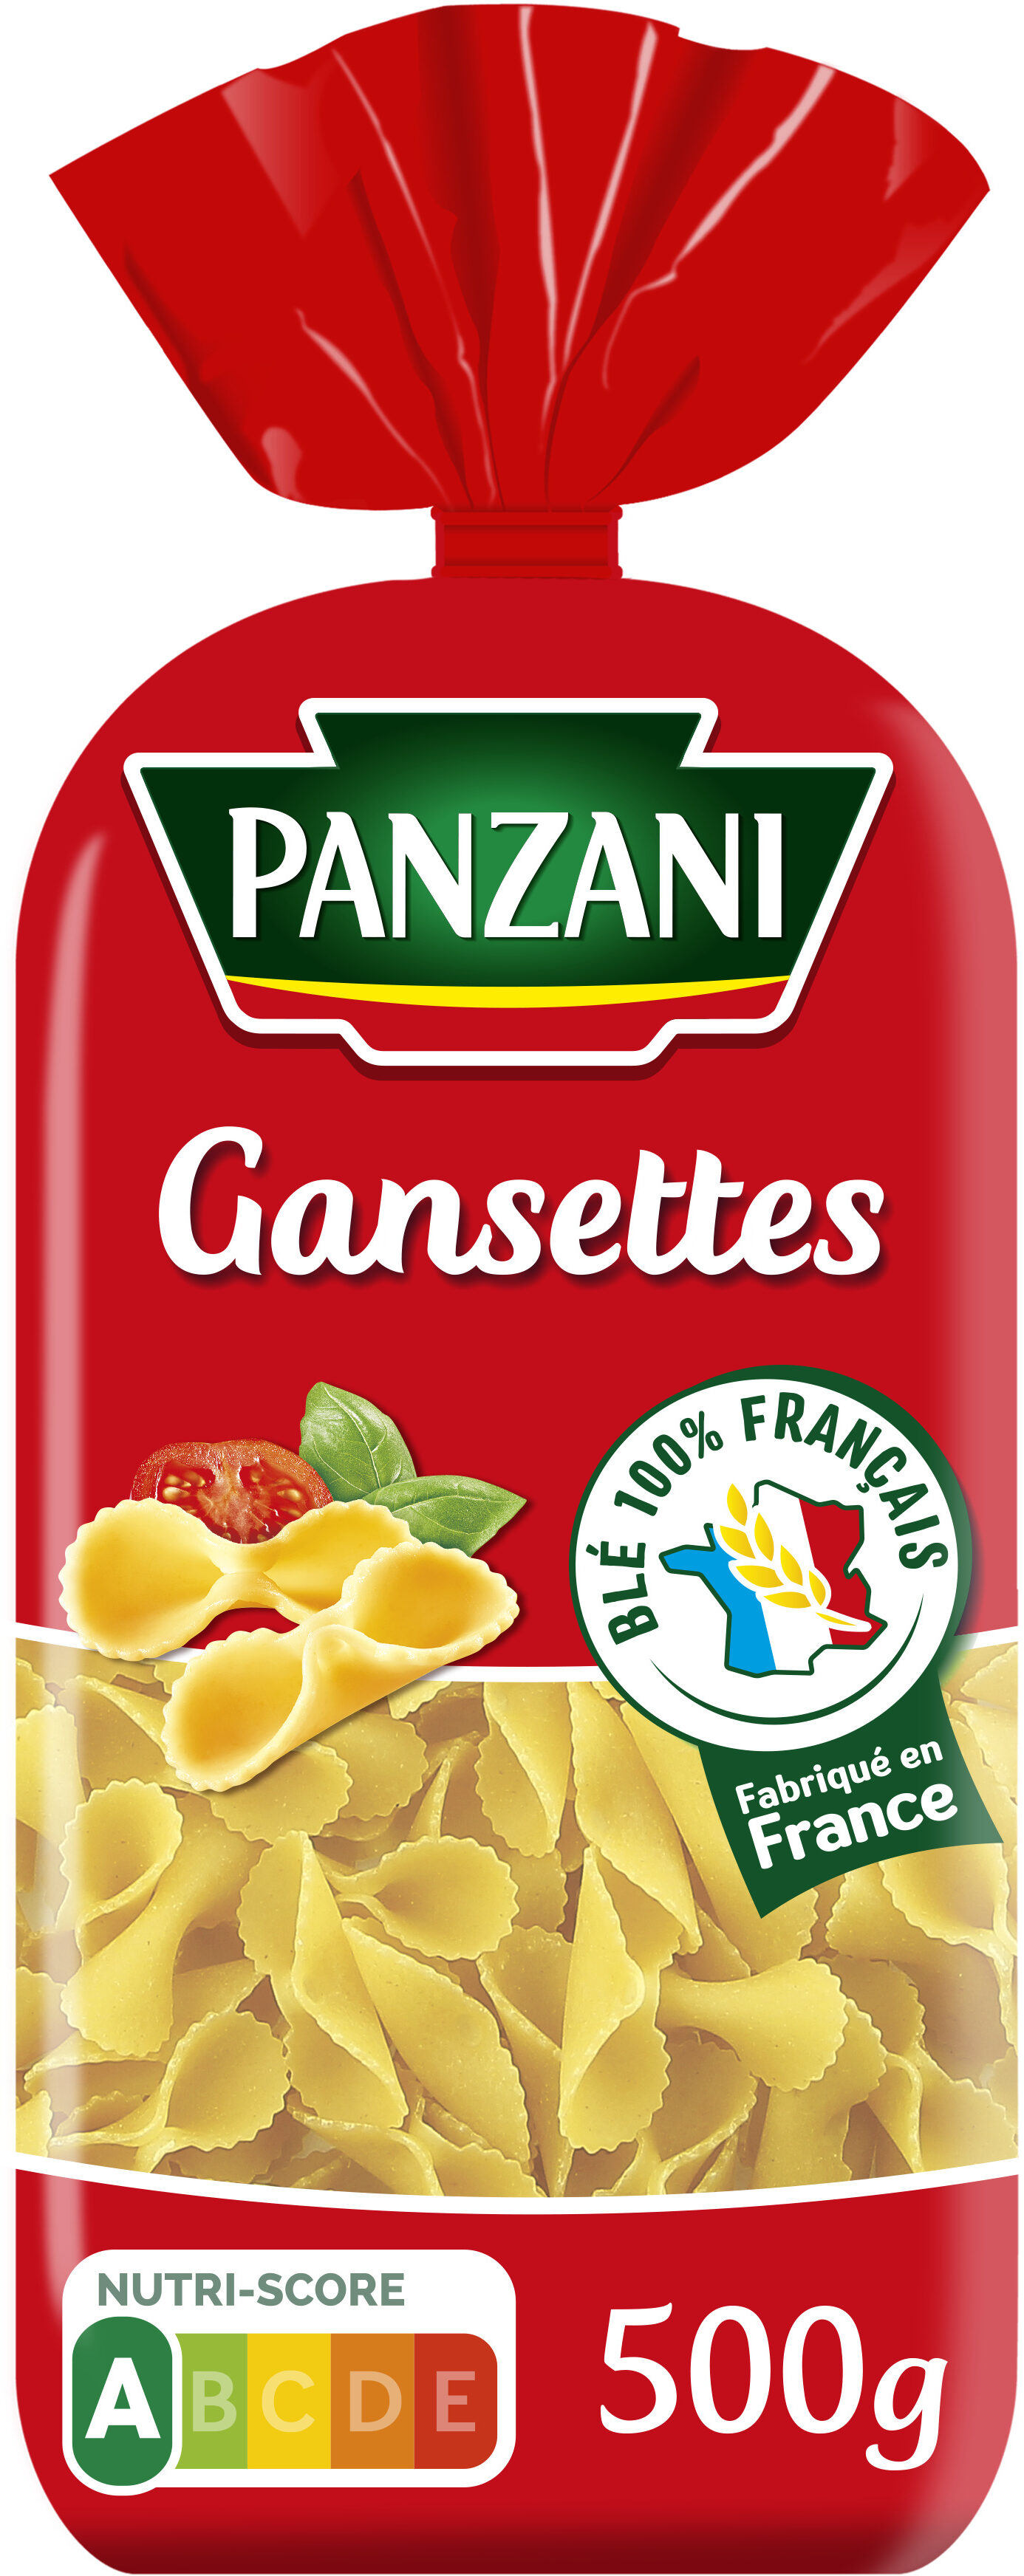 Panzani gansettes 500g - Produkt - fr